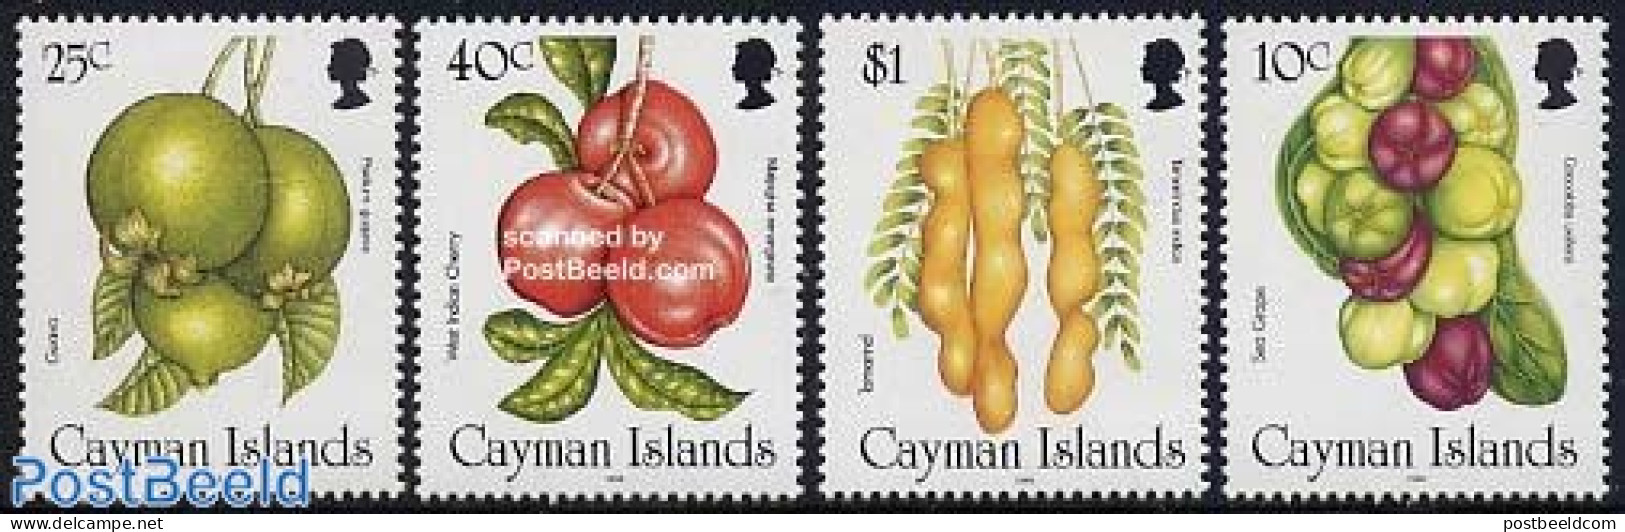 Cayman Islands 1996 Fruits 4v, Mint NH, Nature - Fruit - Fruit